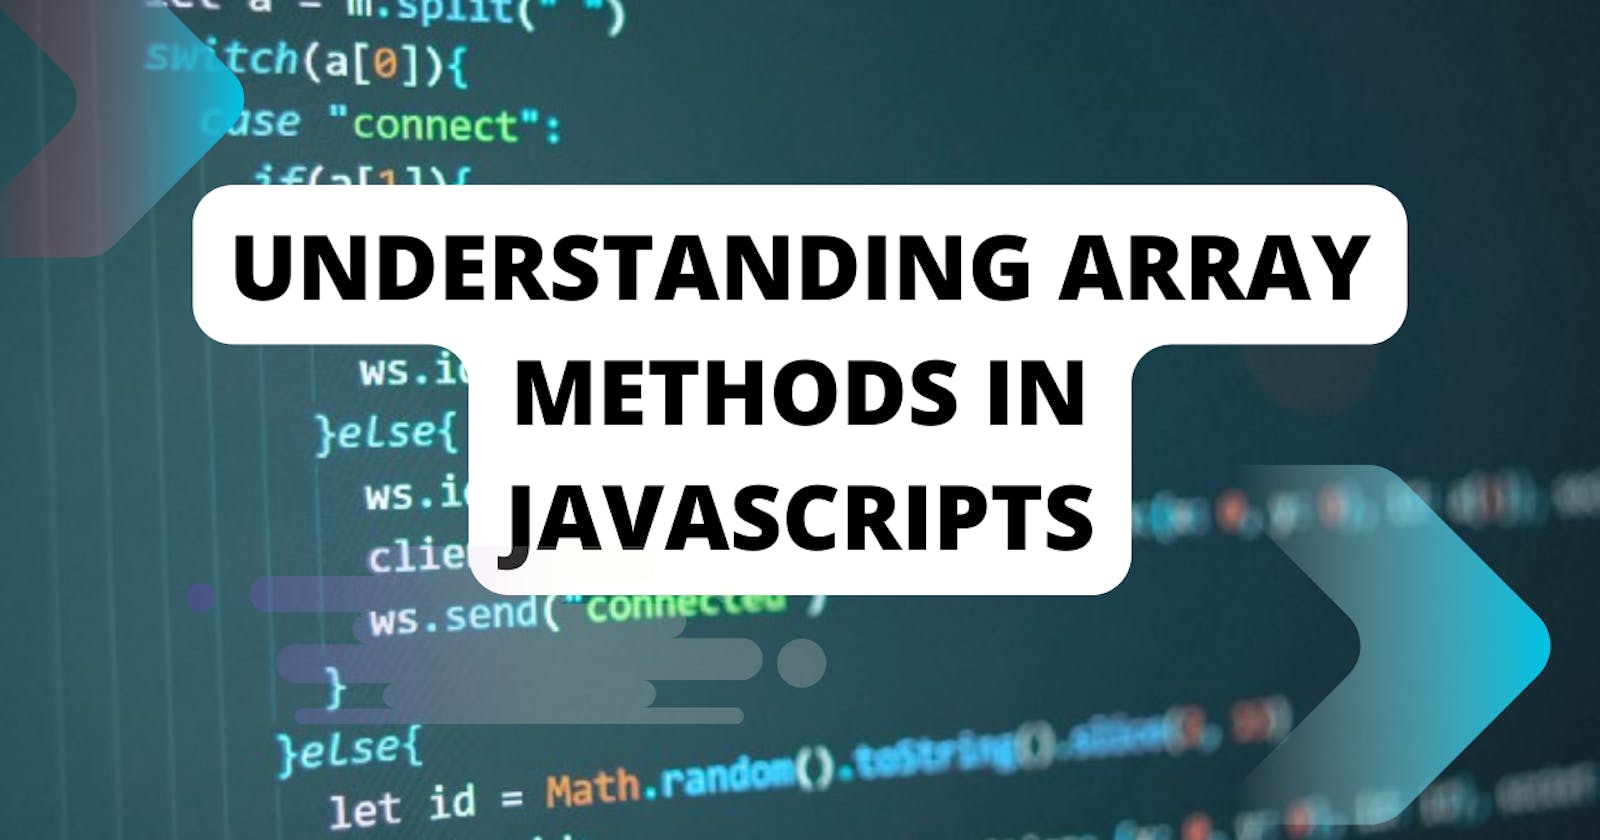 Understanding array methods in Javascript